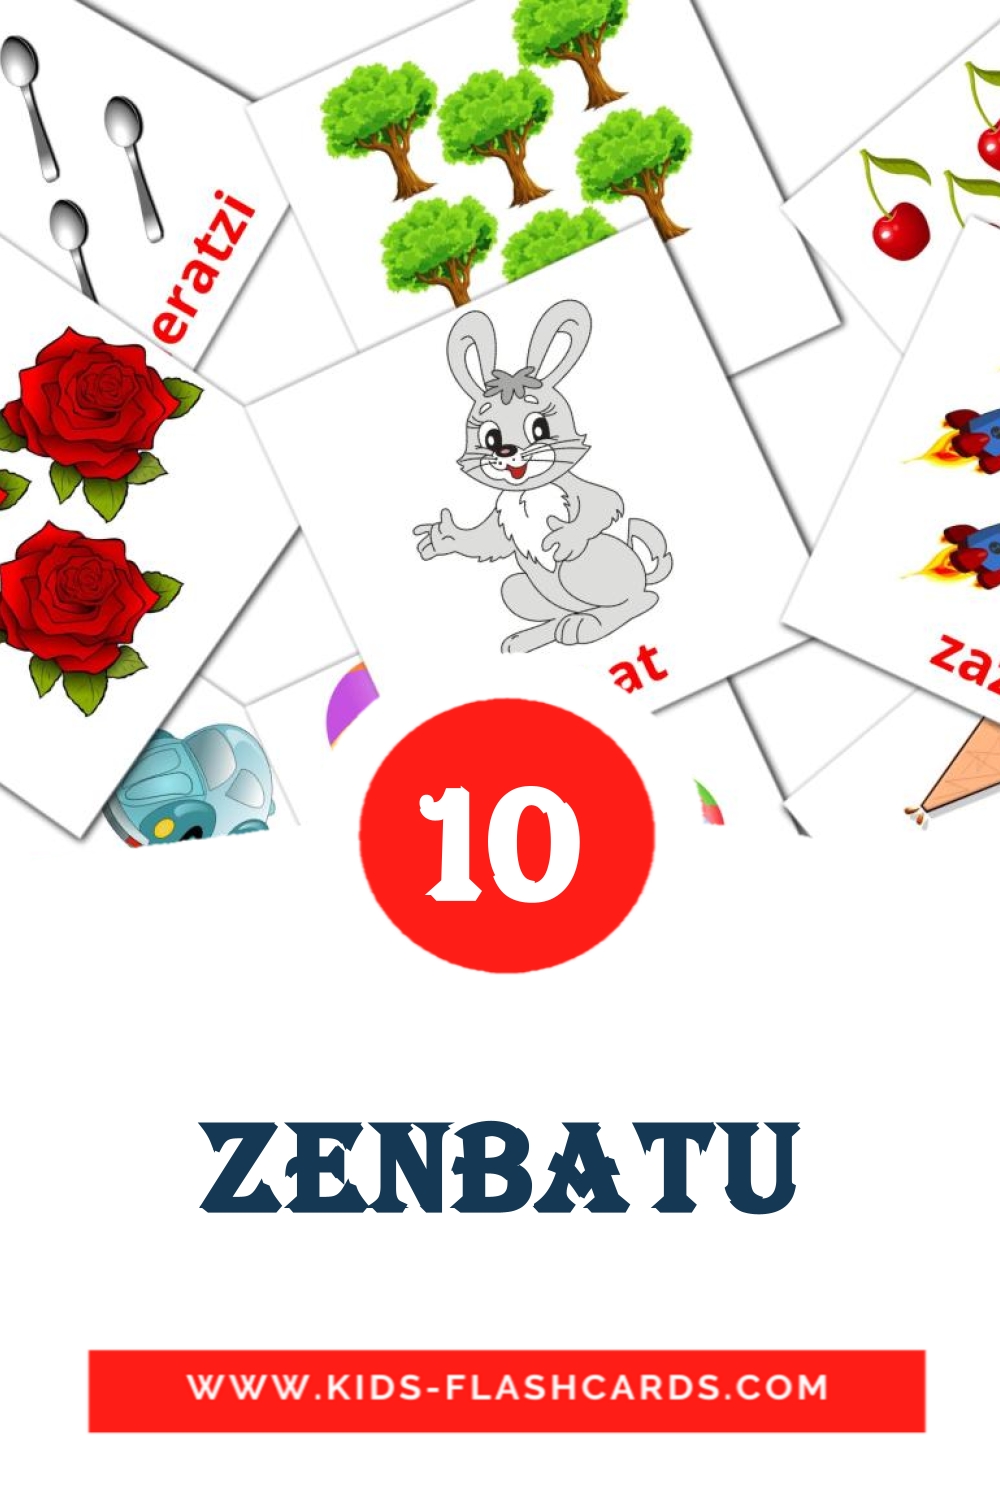 10 cartes illustrées de Zenbatu pour la maternelle en basque